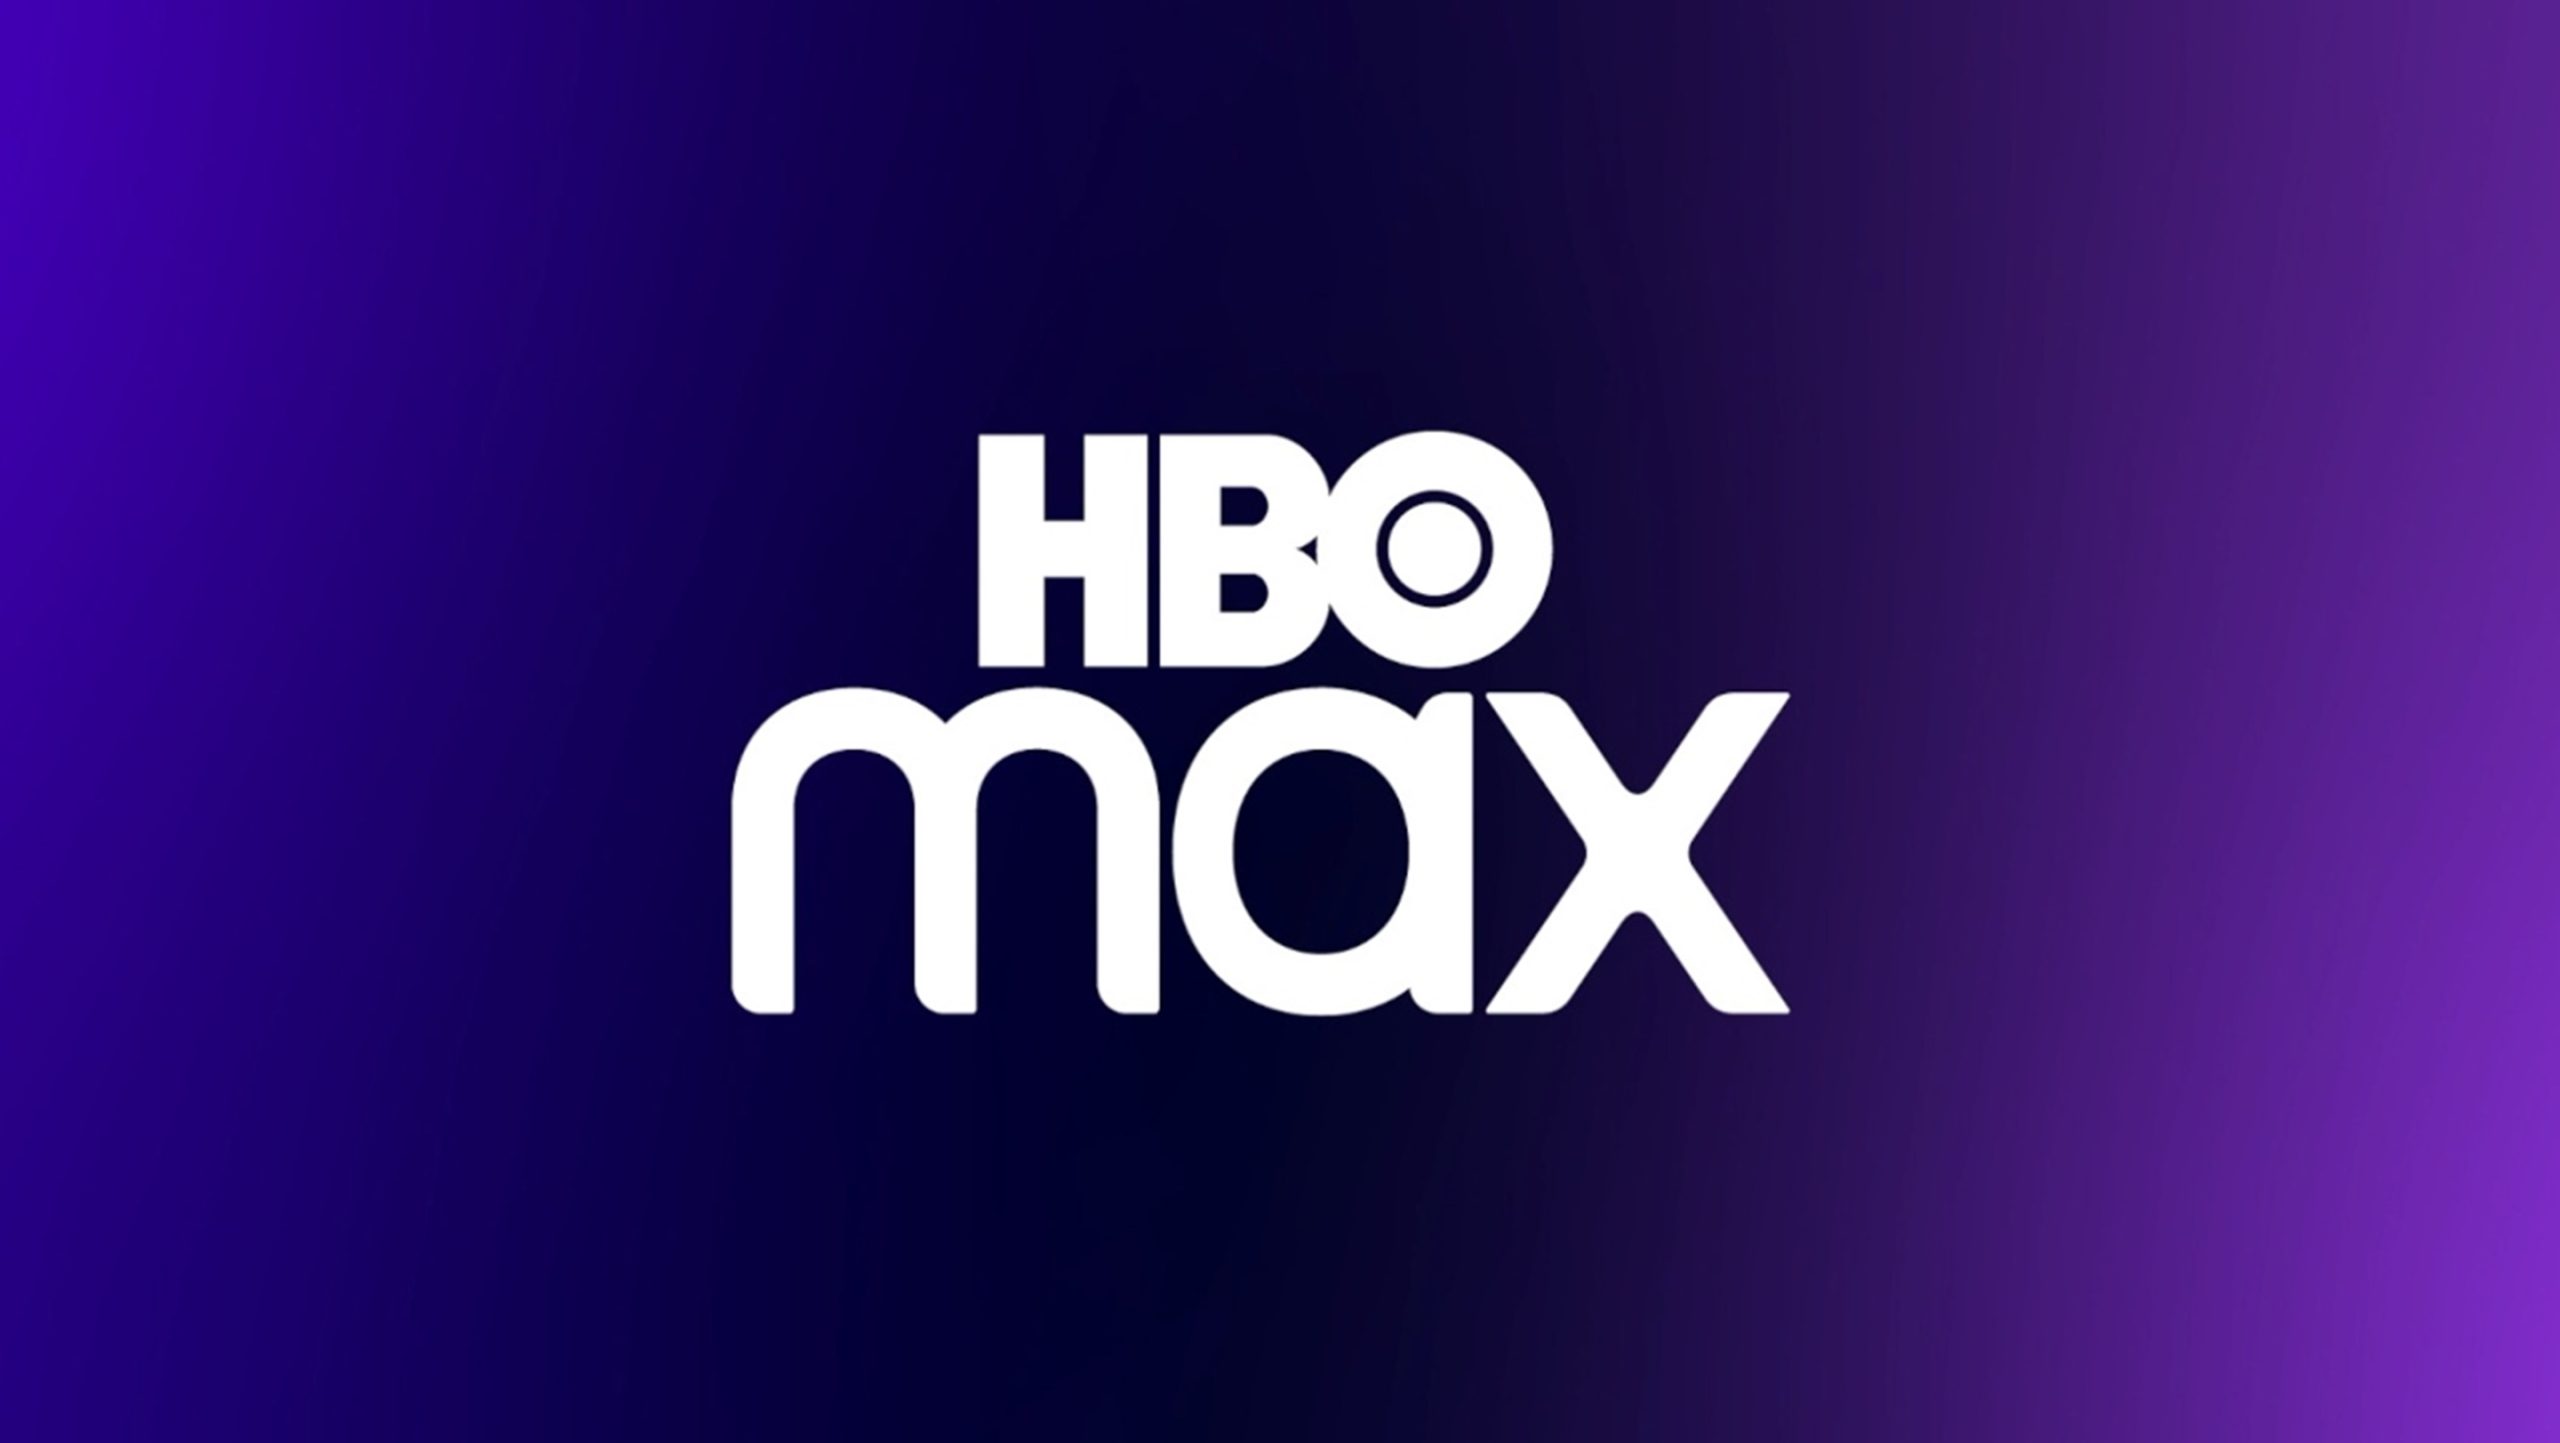 ¿Cómo puedo acceder a HBO Max en España?